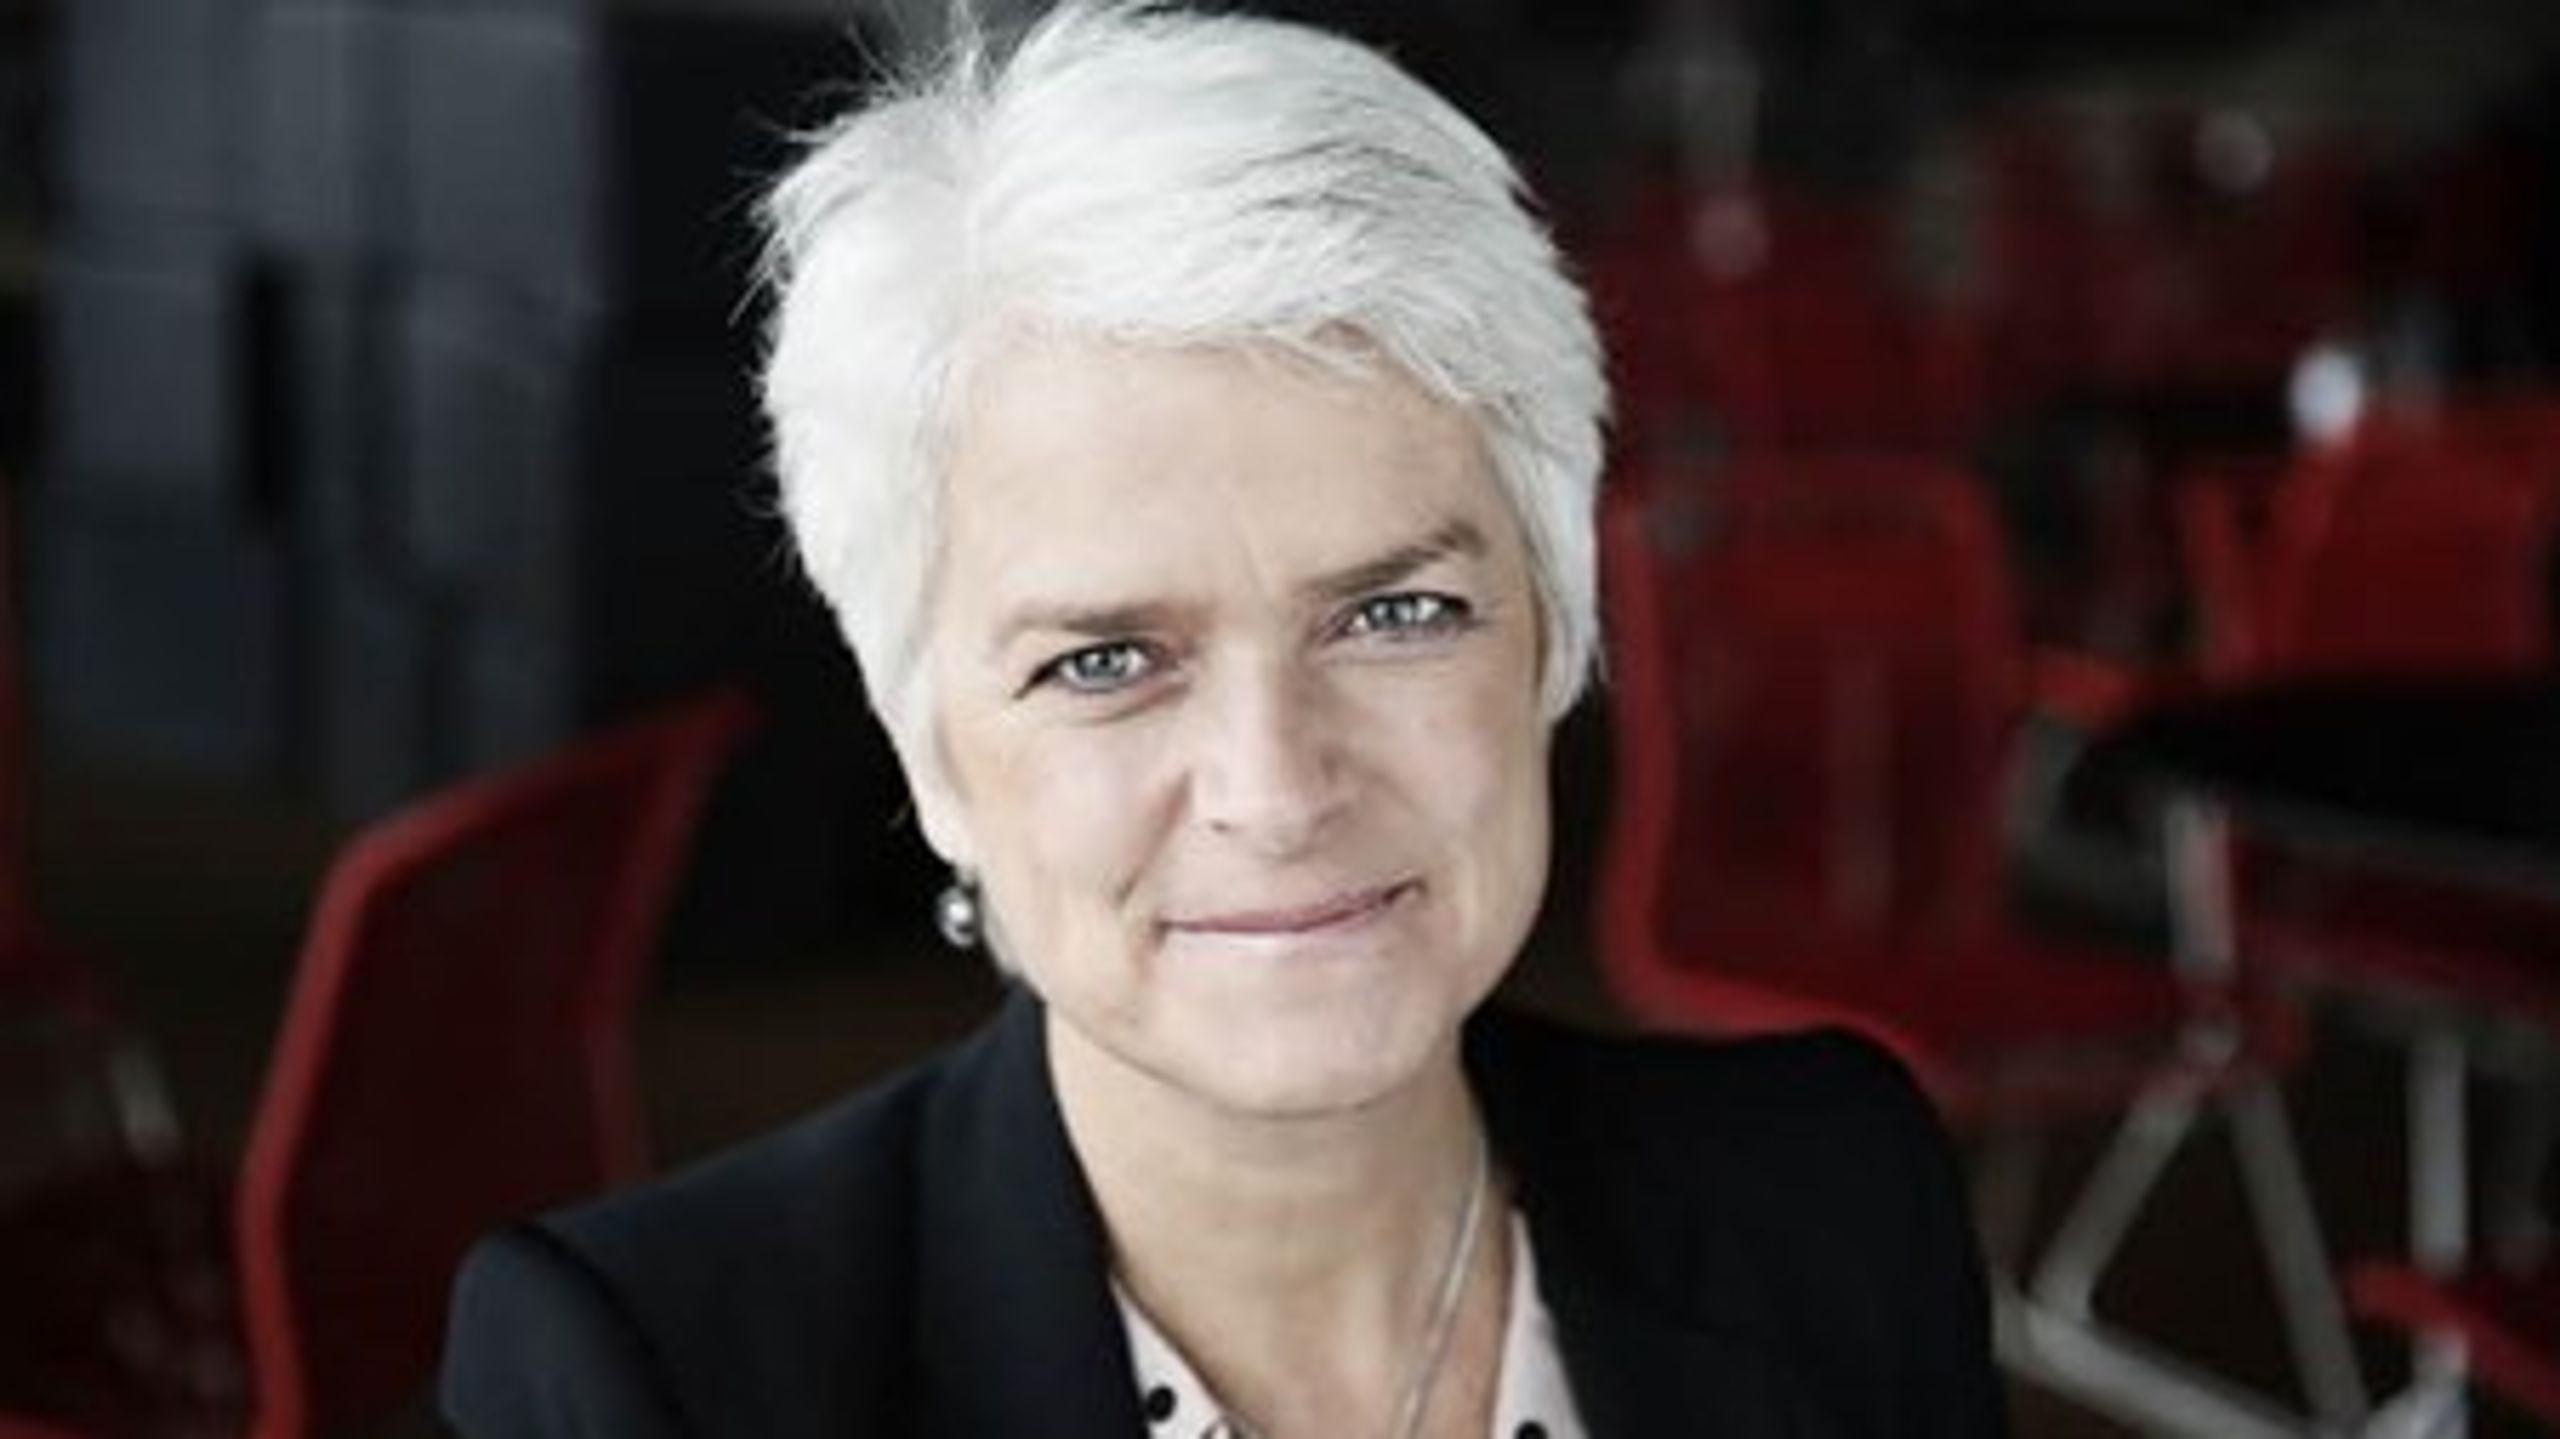 "Omstrukturering og smartere løsninger må højere op på dagsordenen, hvis vi vil fortsætte med at nyde godt af det unikke velfærdssamfund, vi bryster os af i Danmark," skriver Annette Vilhelmsen (SF).